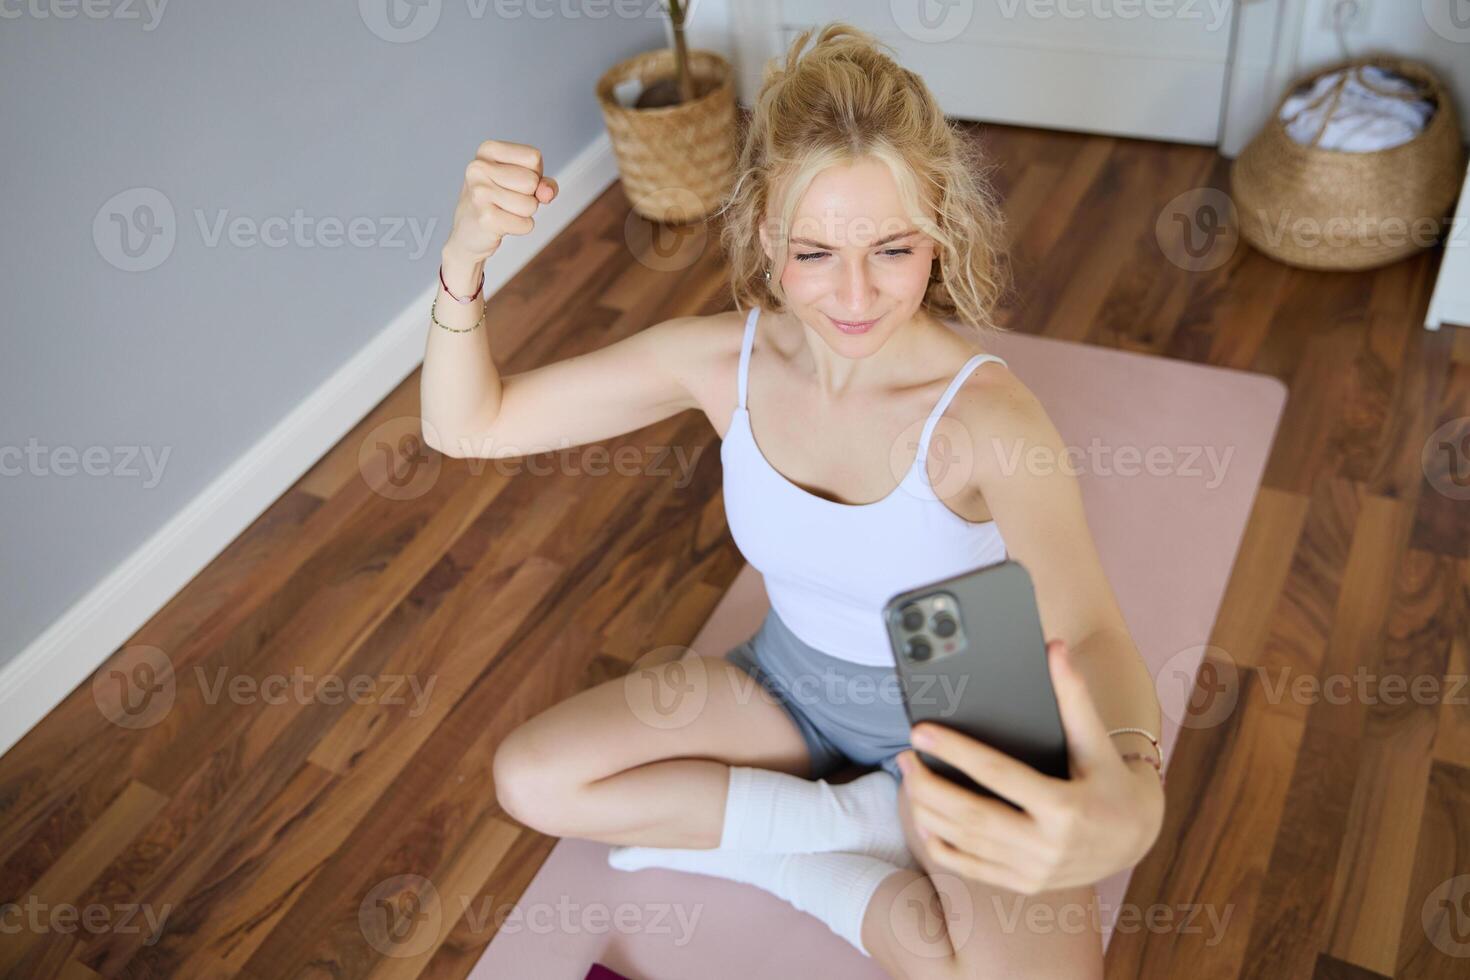 giovane sportivo fitness allenatore, yoga istruttore fa vivere flusso, prende selfie su smartphone mentre seduta su gomma da cancellare stuoia a casa, registrazione sua allenarsi formazione sessione foto